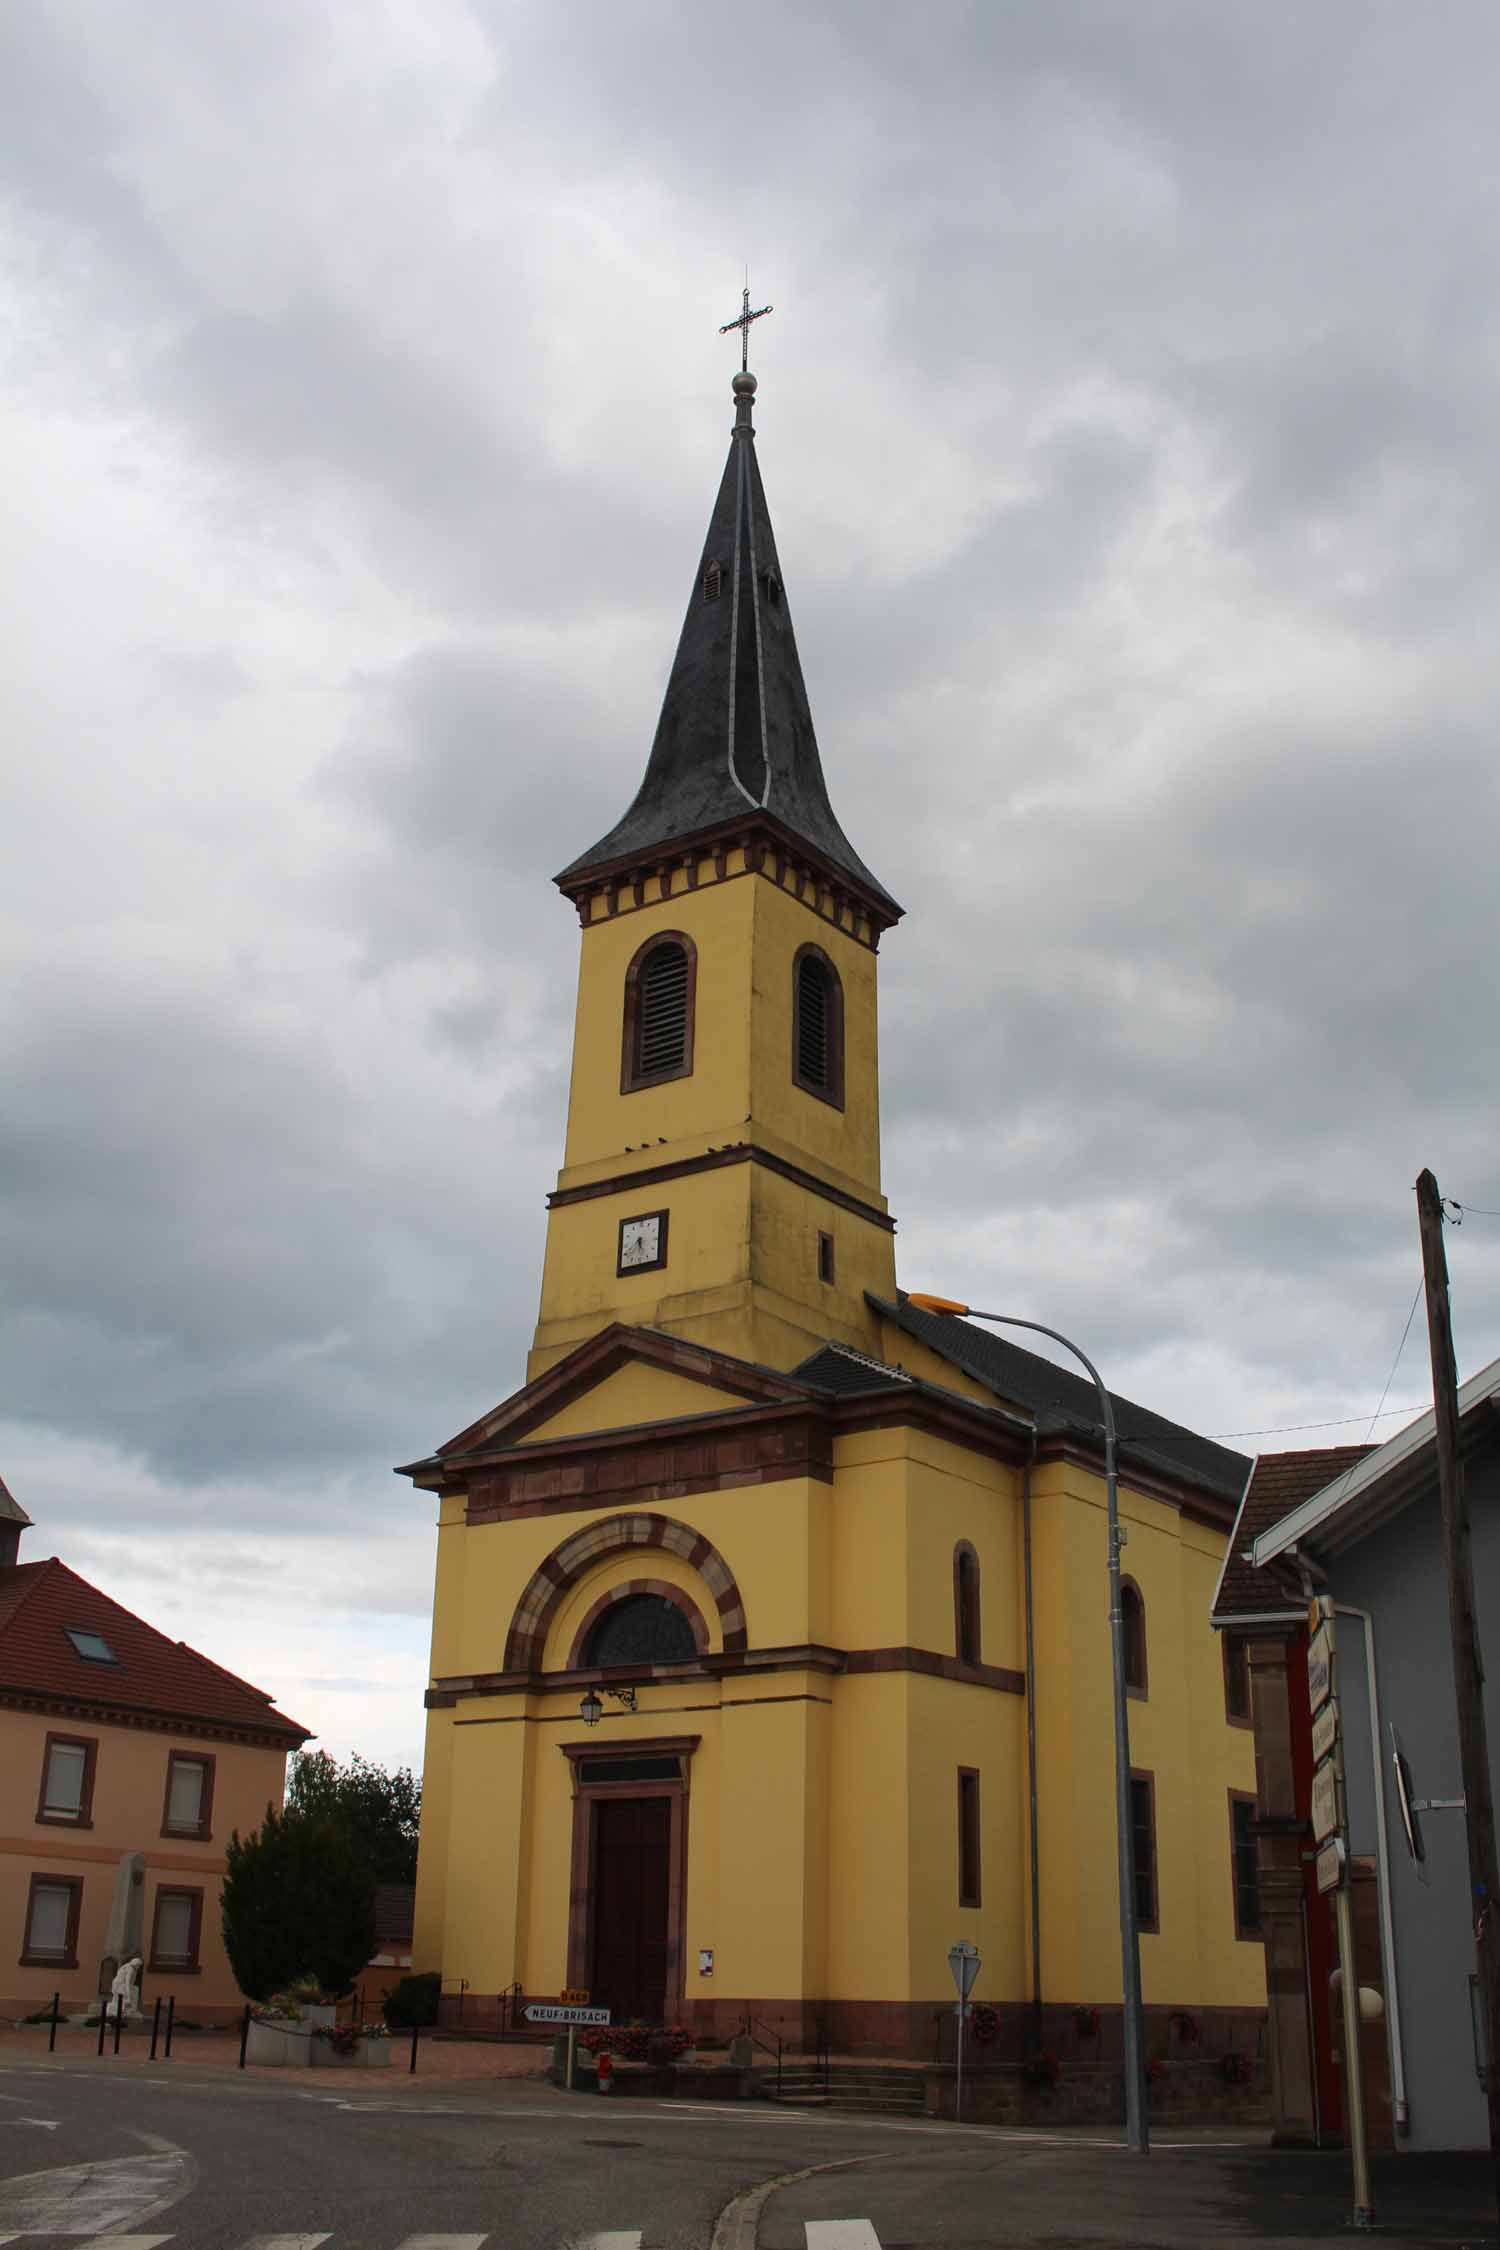 Heiteren, église Saint-Jacques-le-Majeur